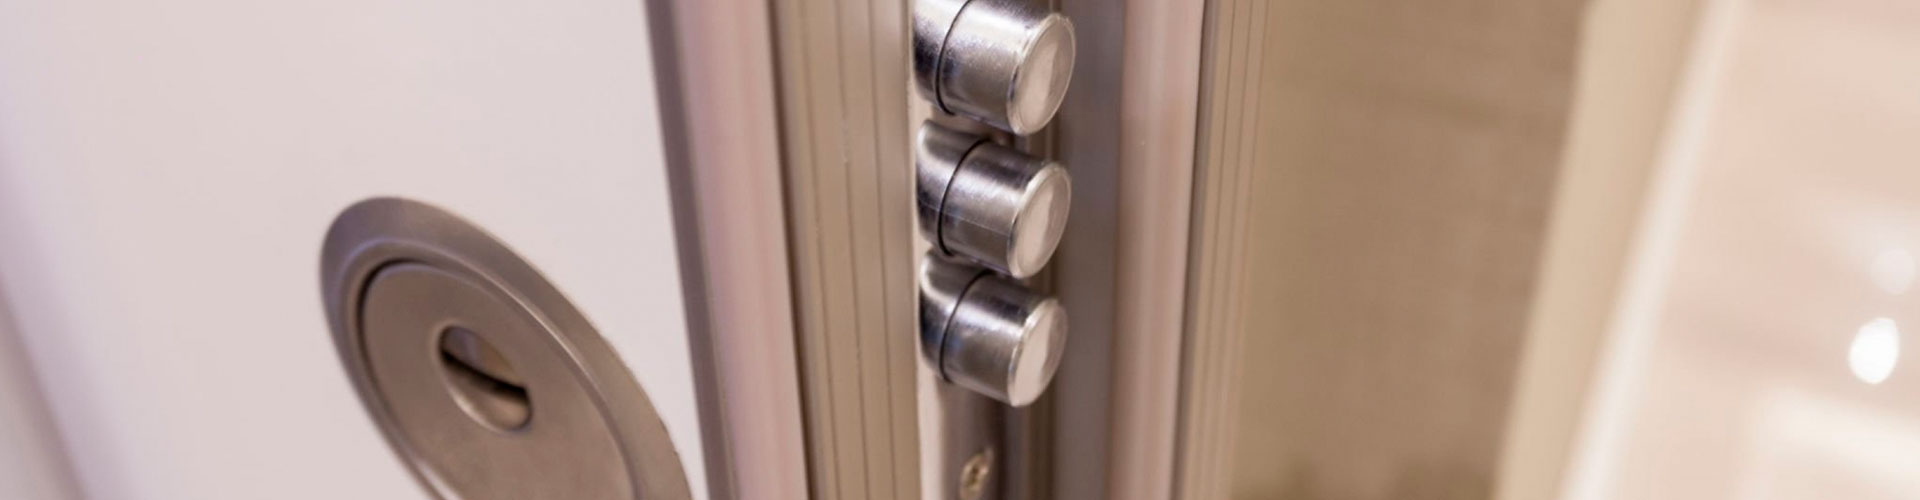 Criterios para la elección de la cerradura en una puerta acorazada